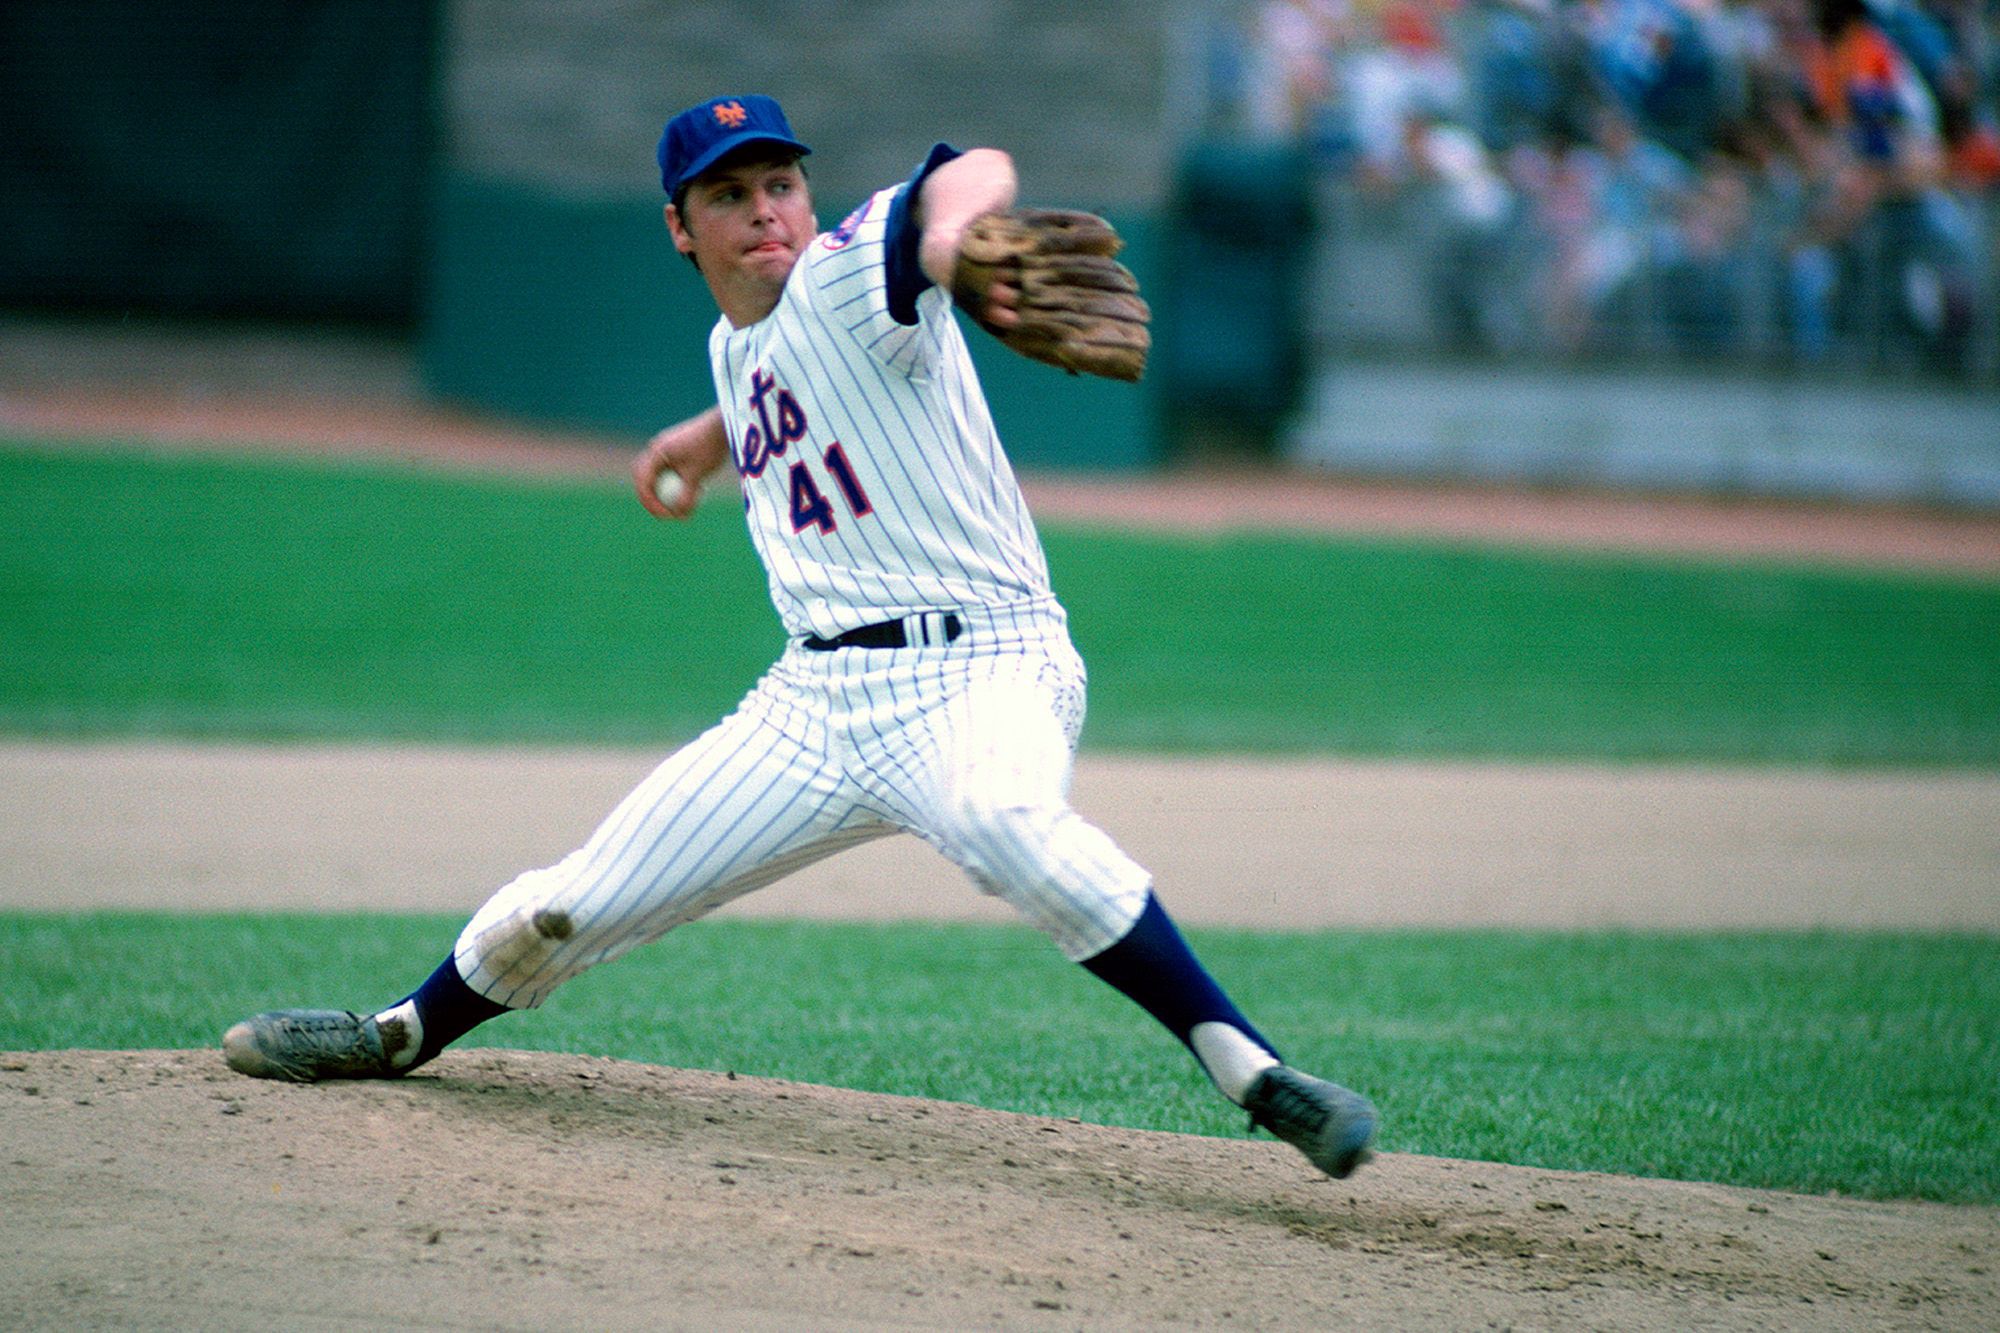 Tom Seaver New York Mets Legend Dies at 75 | SportsRaid